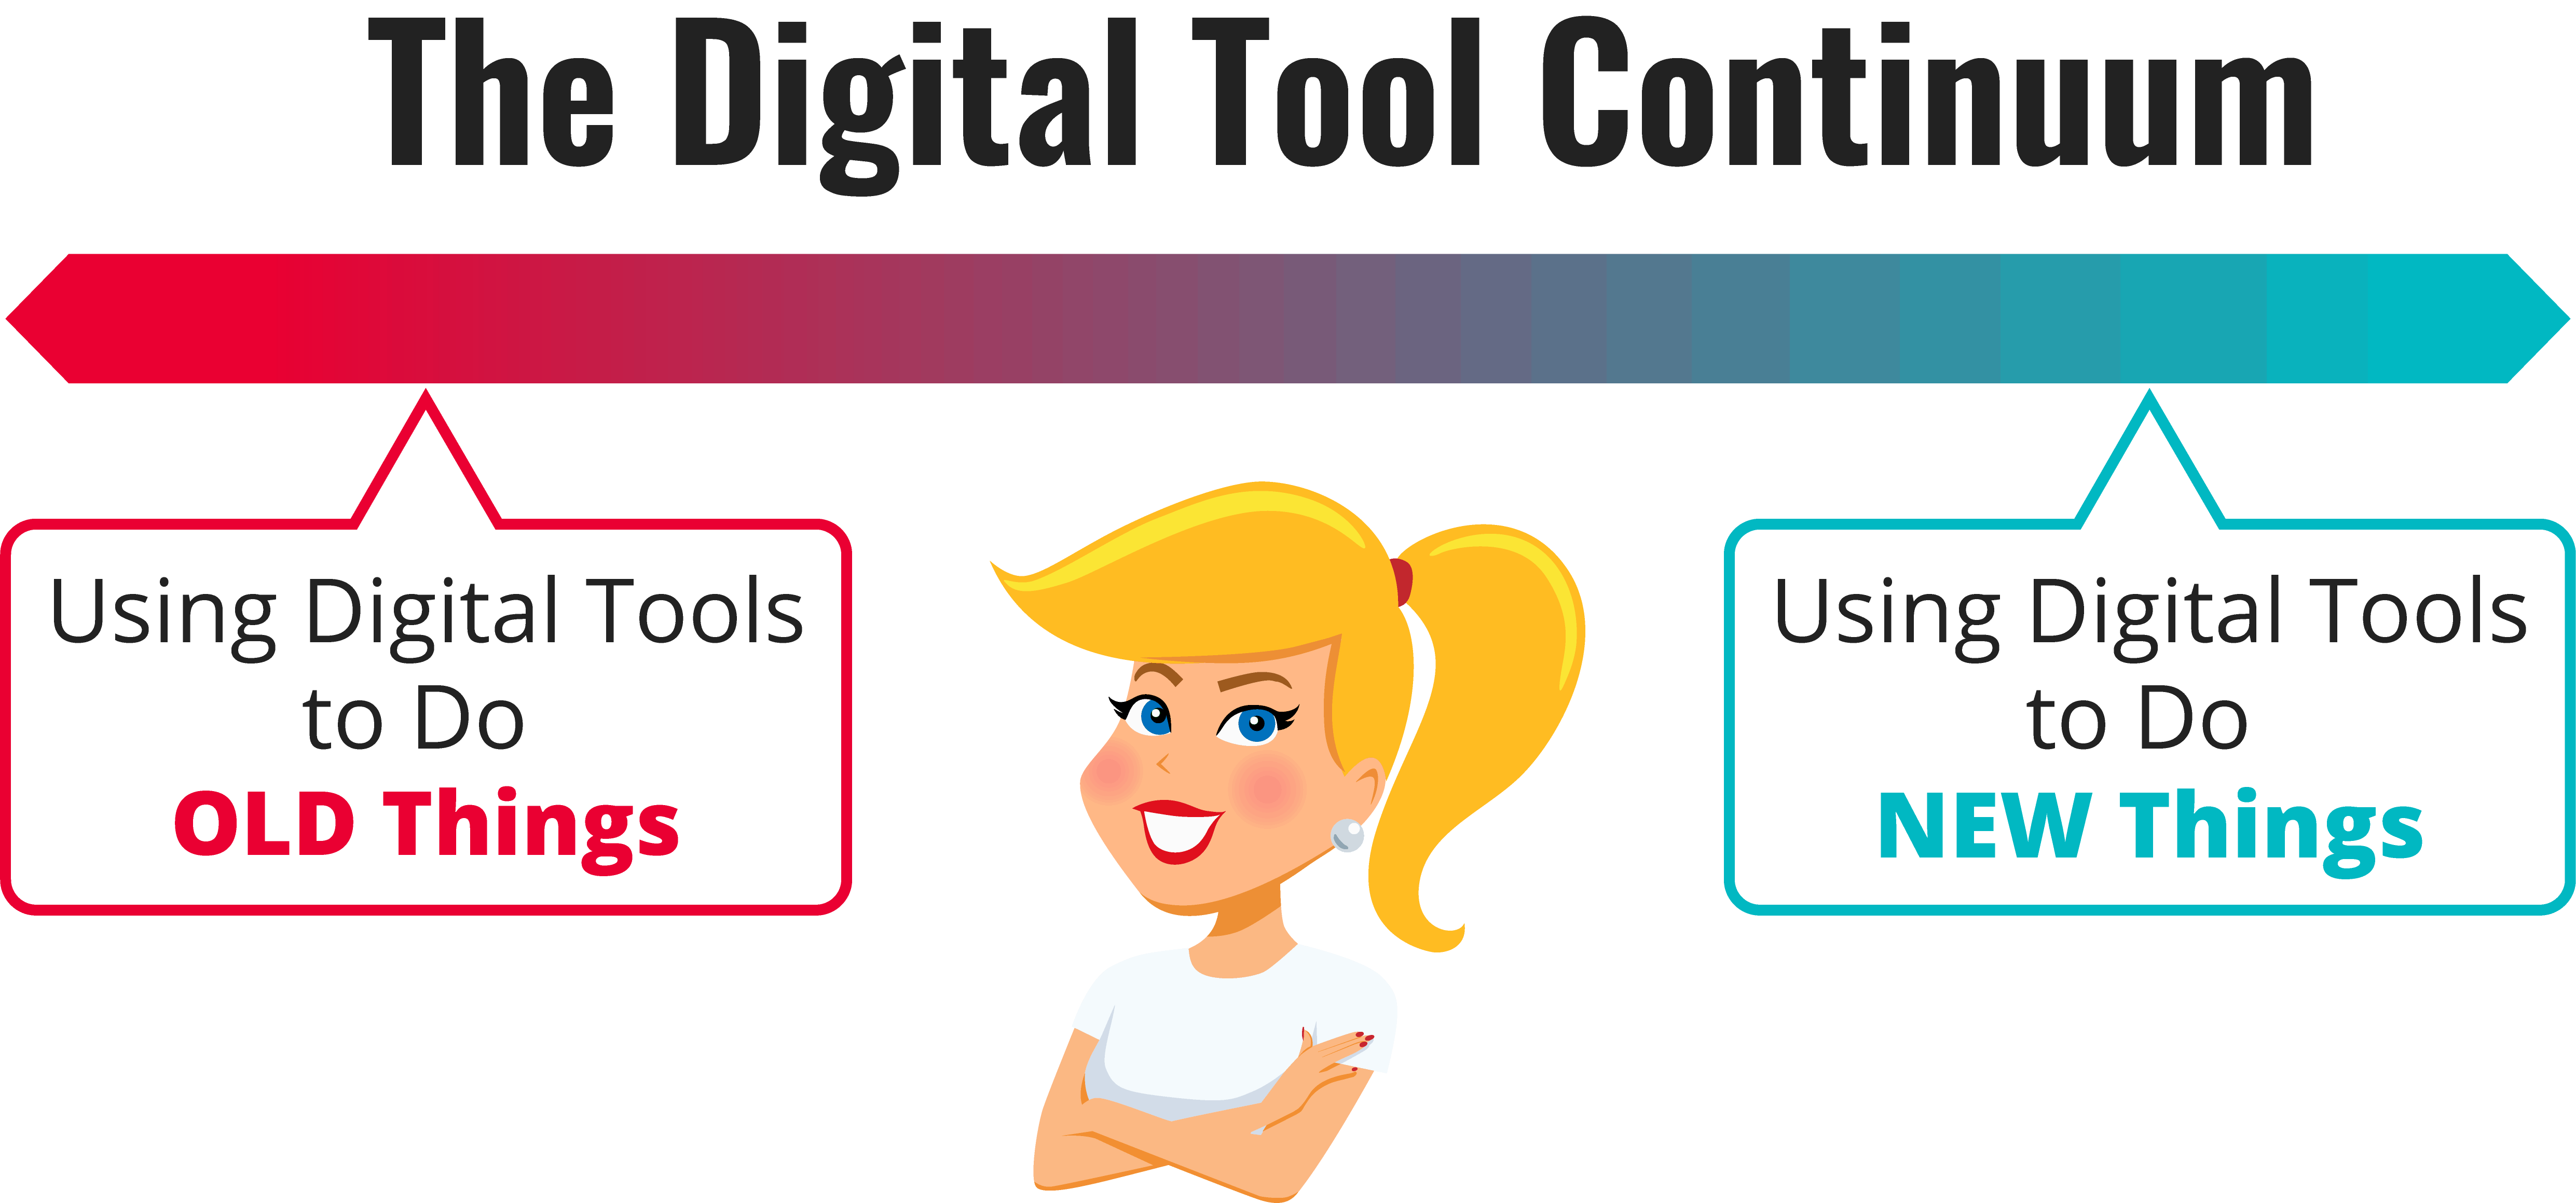 Digital Tool Continuum